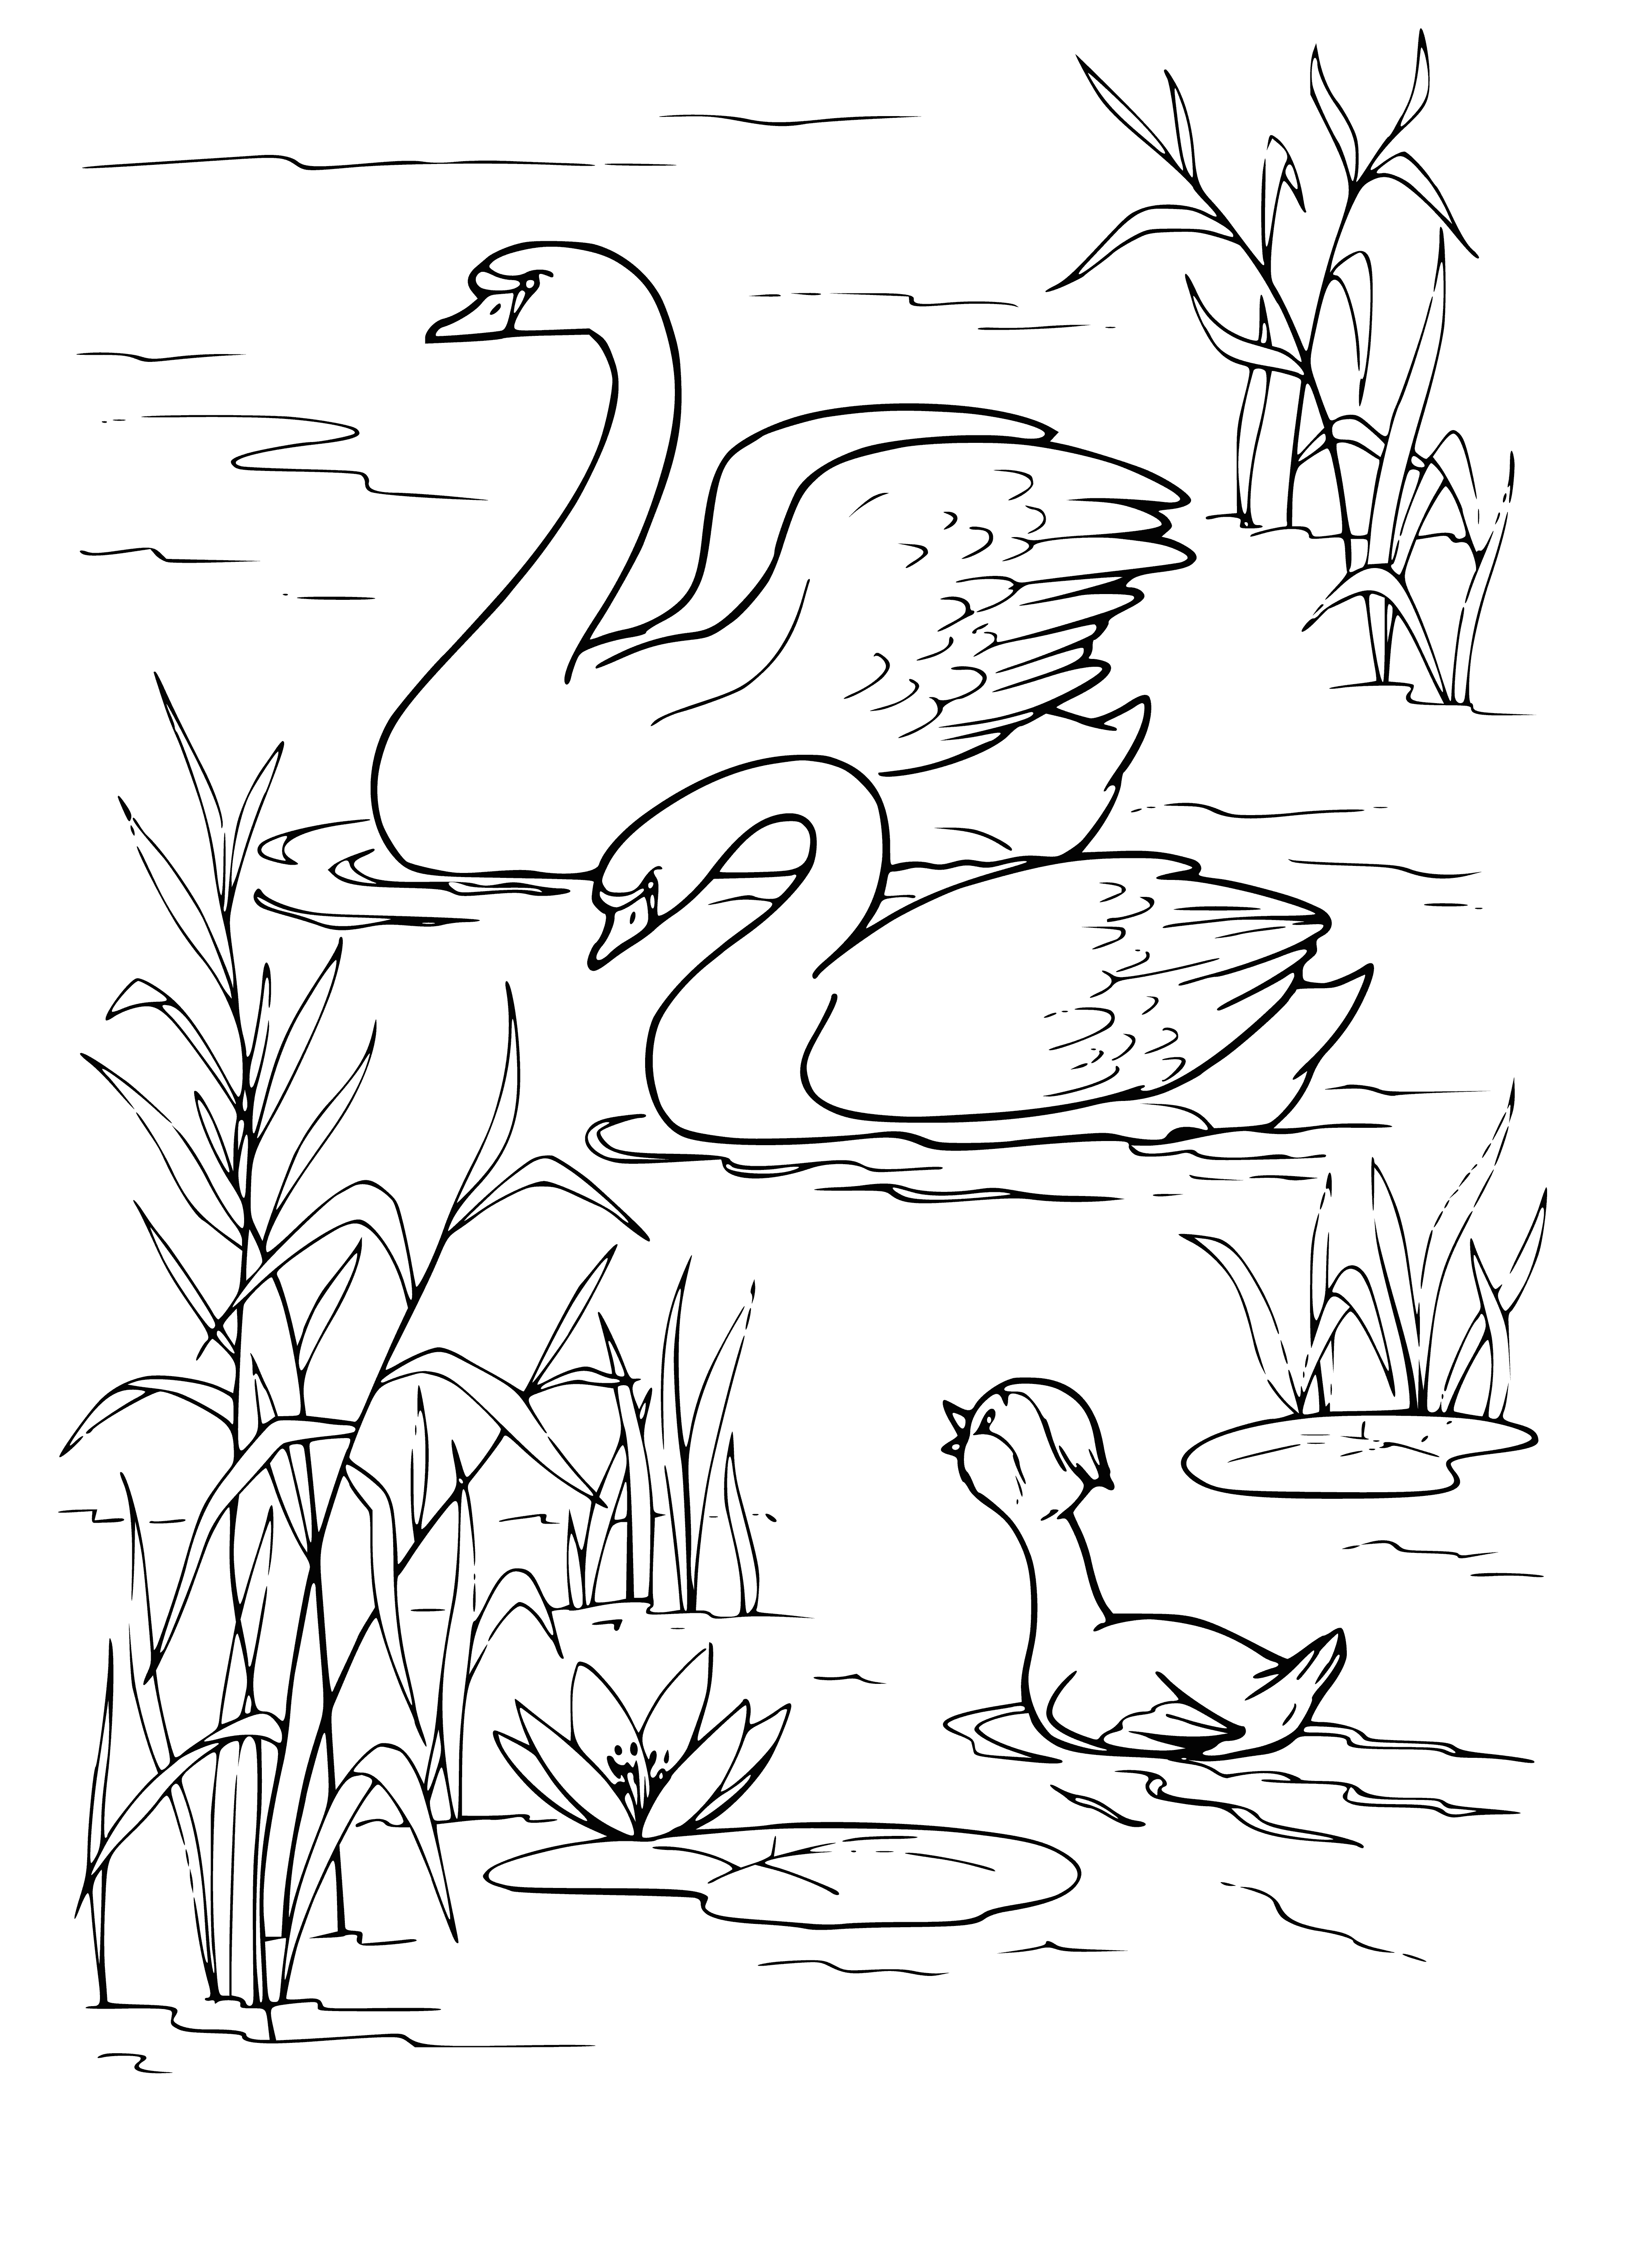 ördek yavrusu kuğular görür boyama sayfası